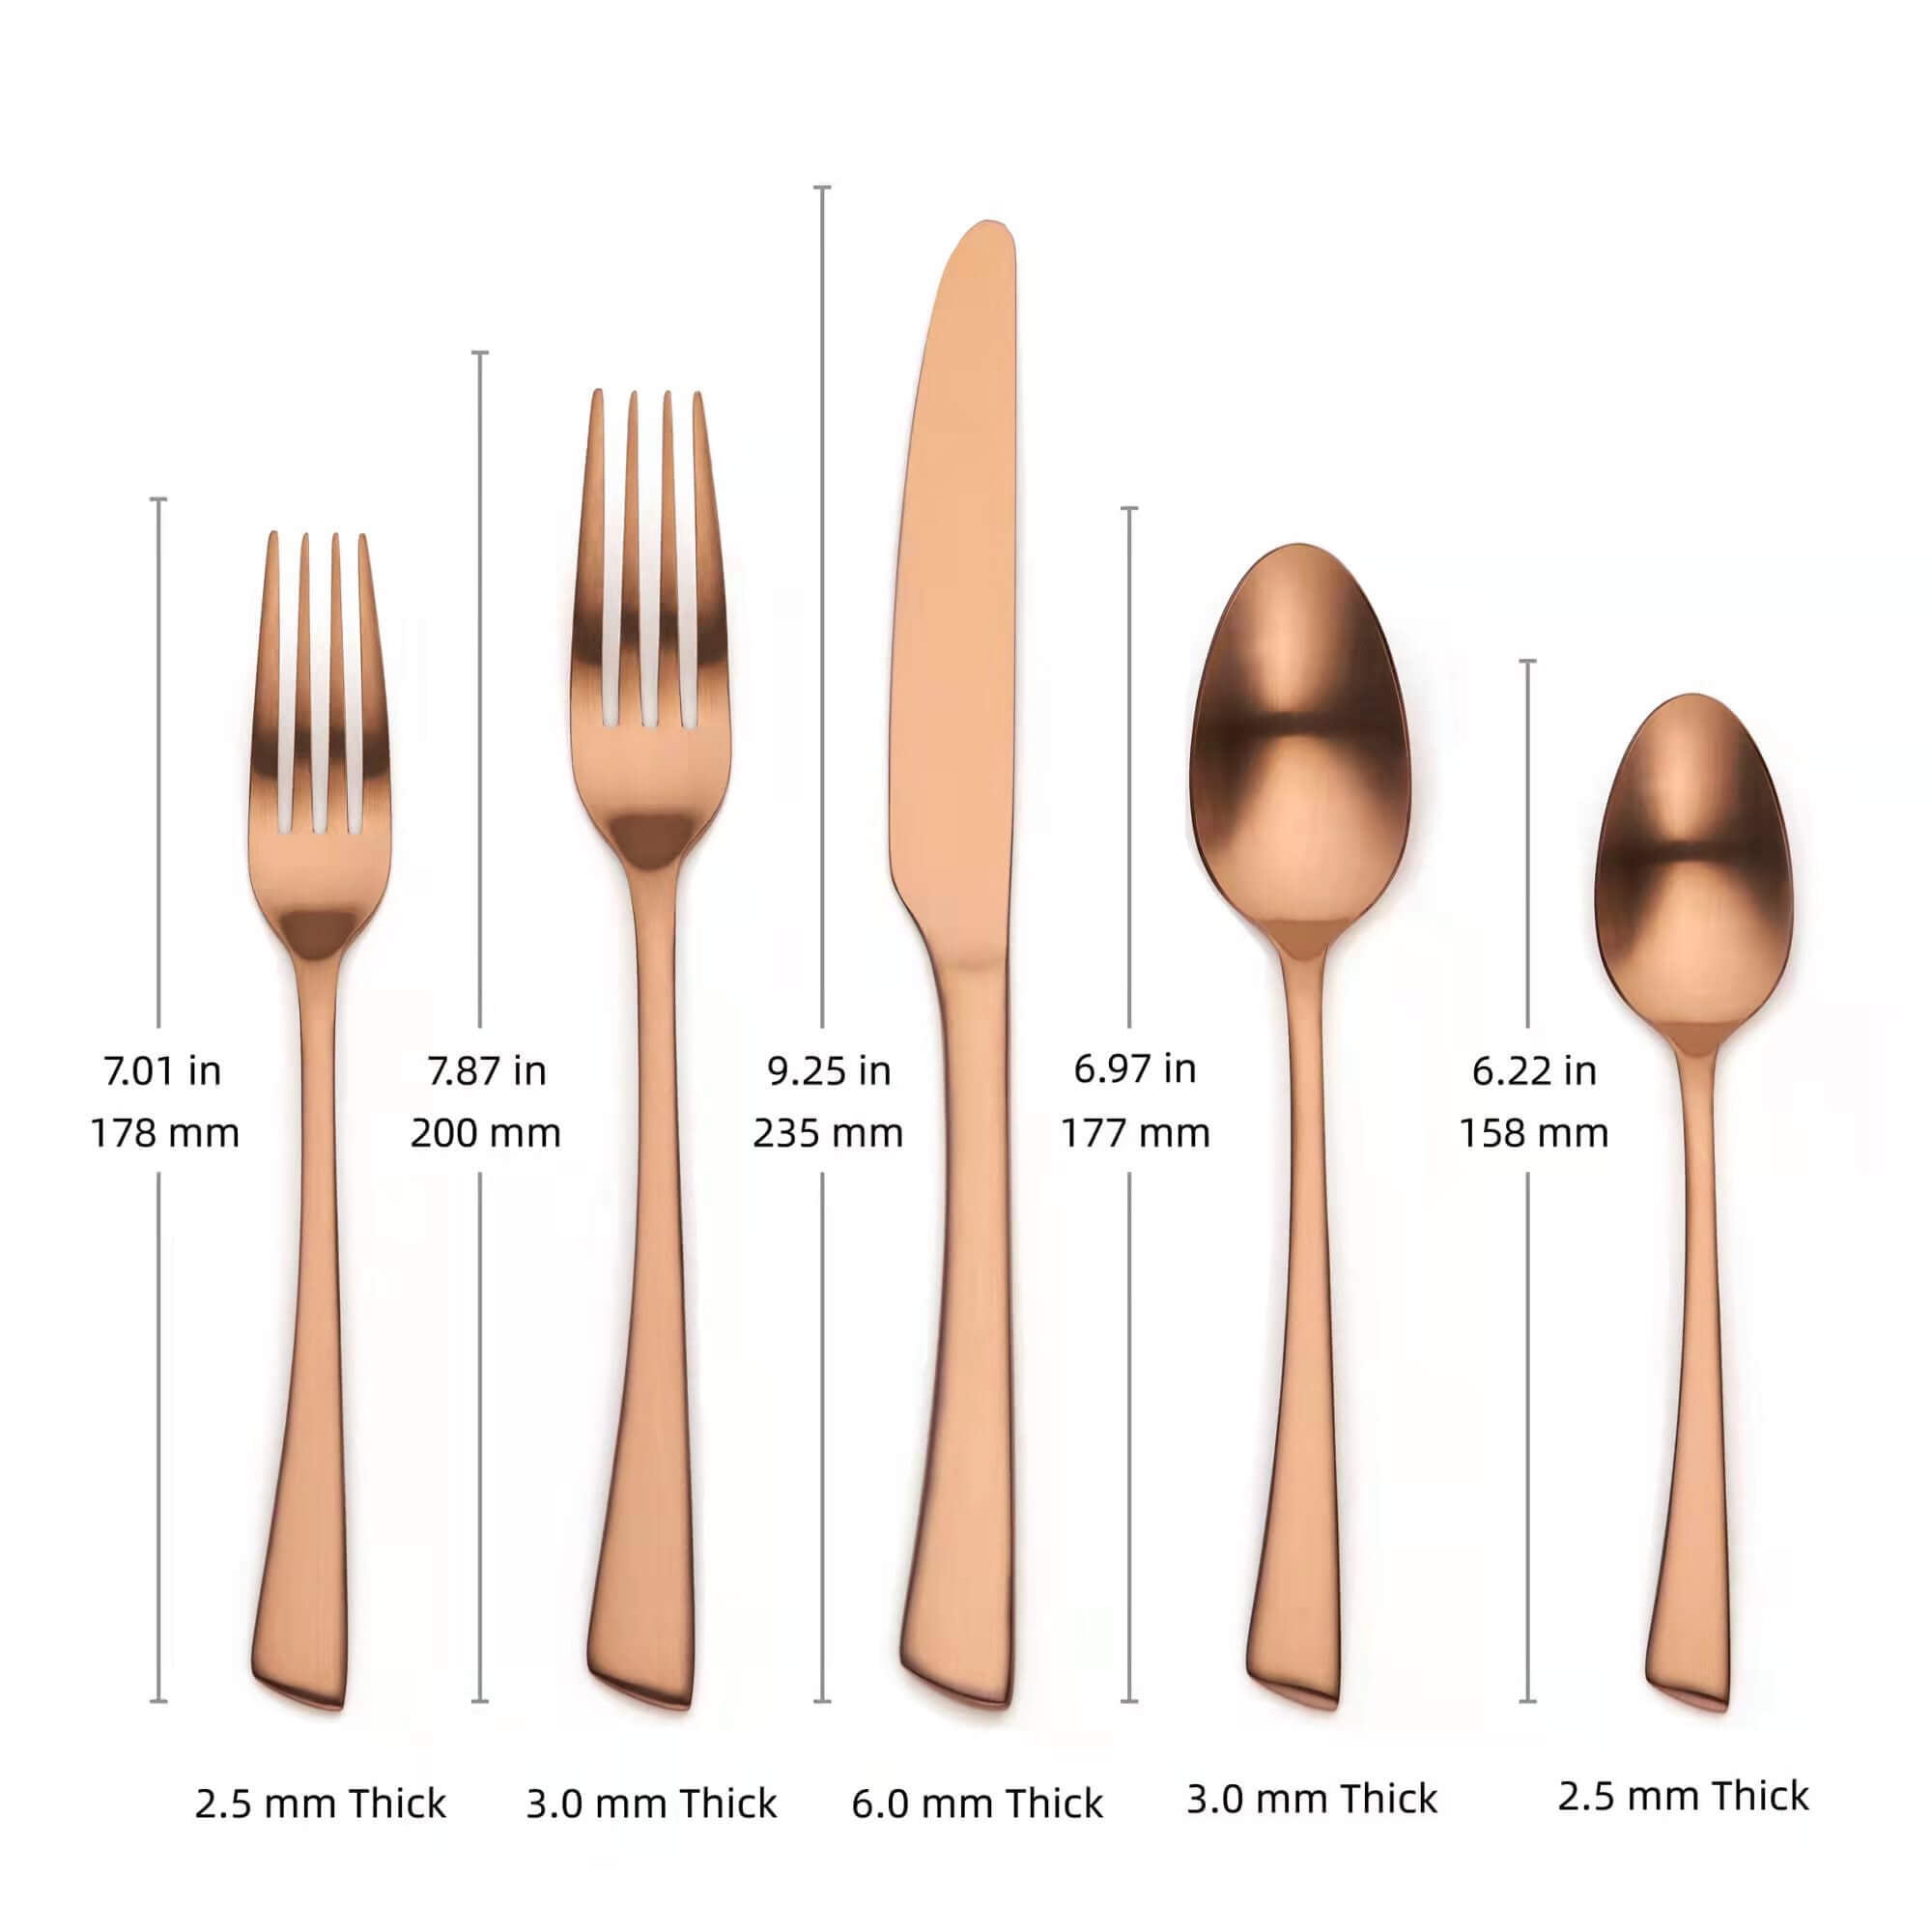 Ozarke Living Essence Cutlery Set - Matte Black - 23 requests